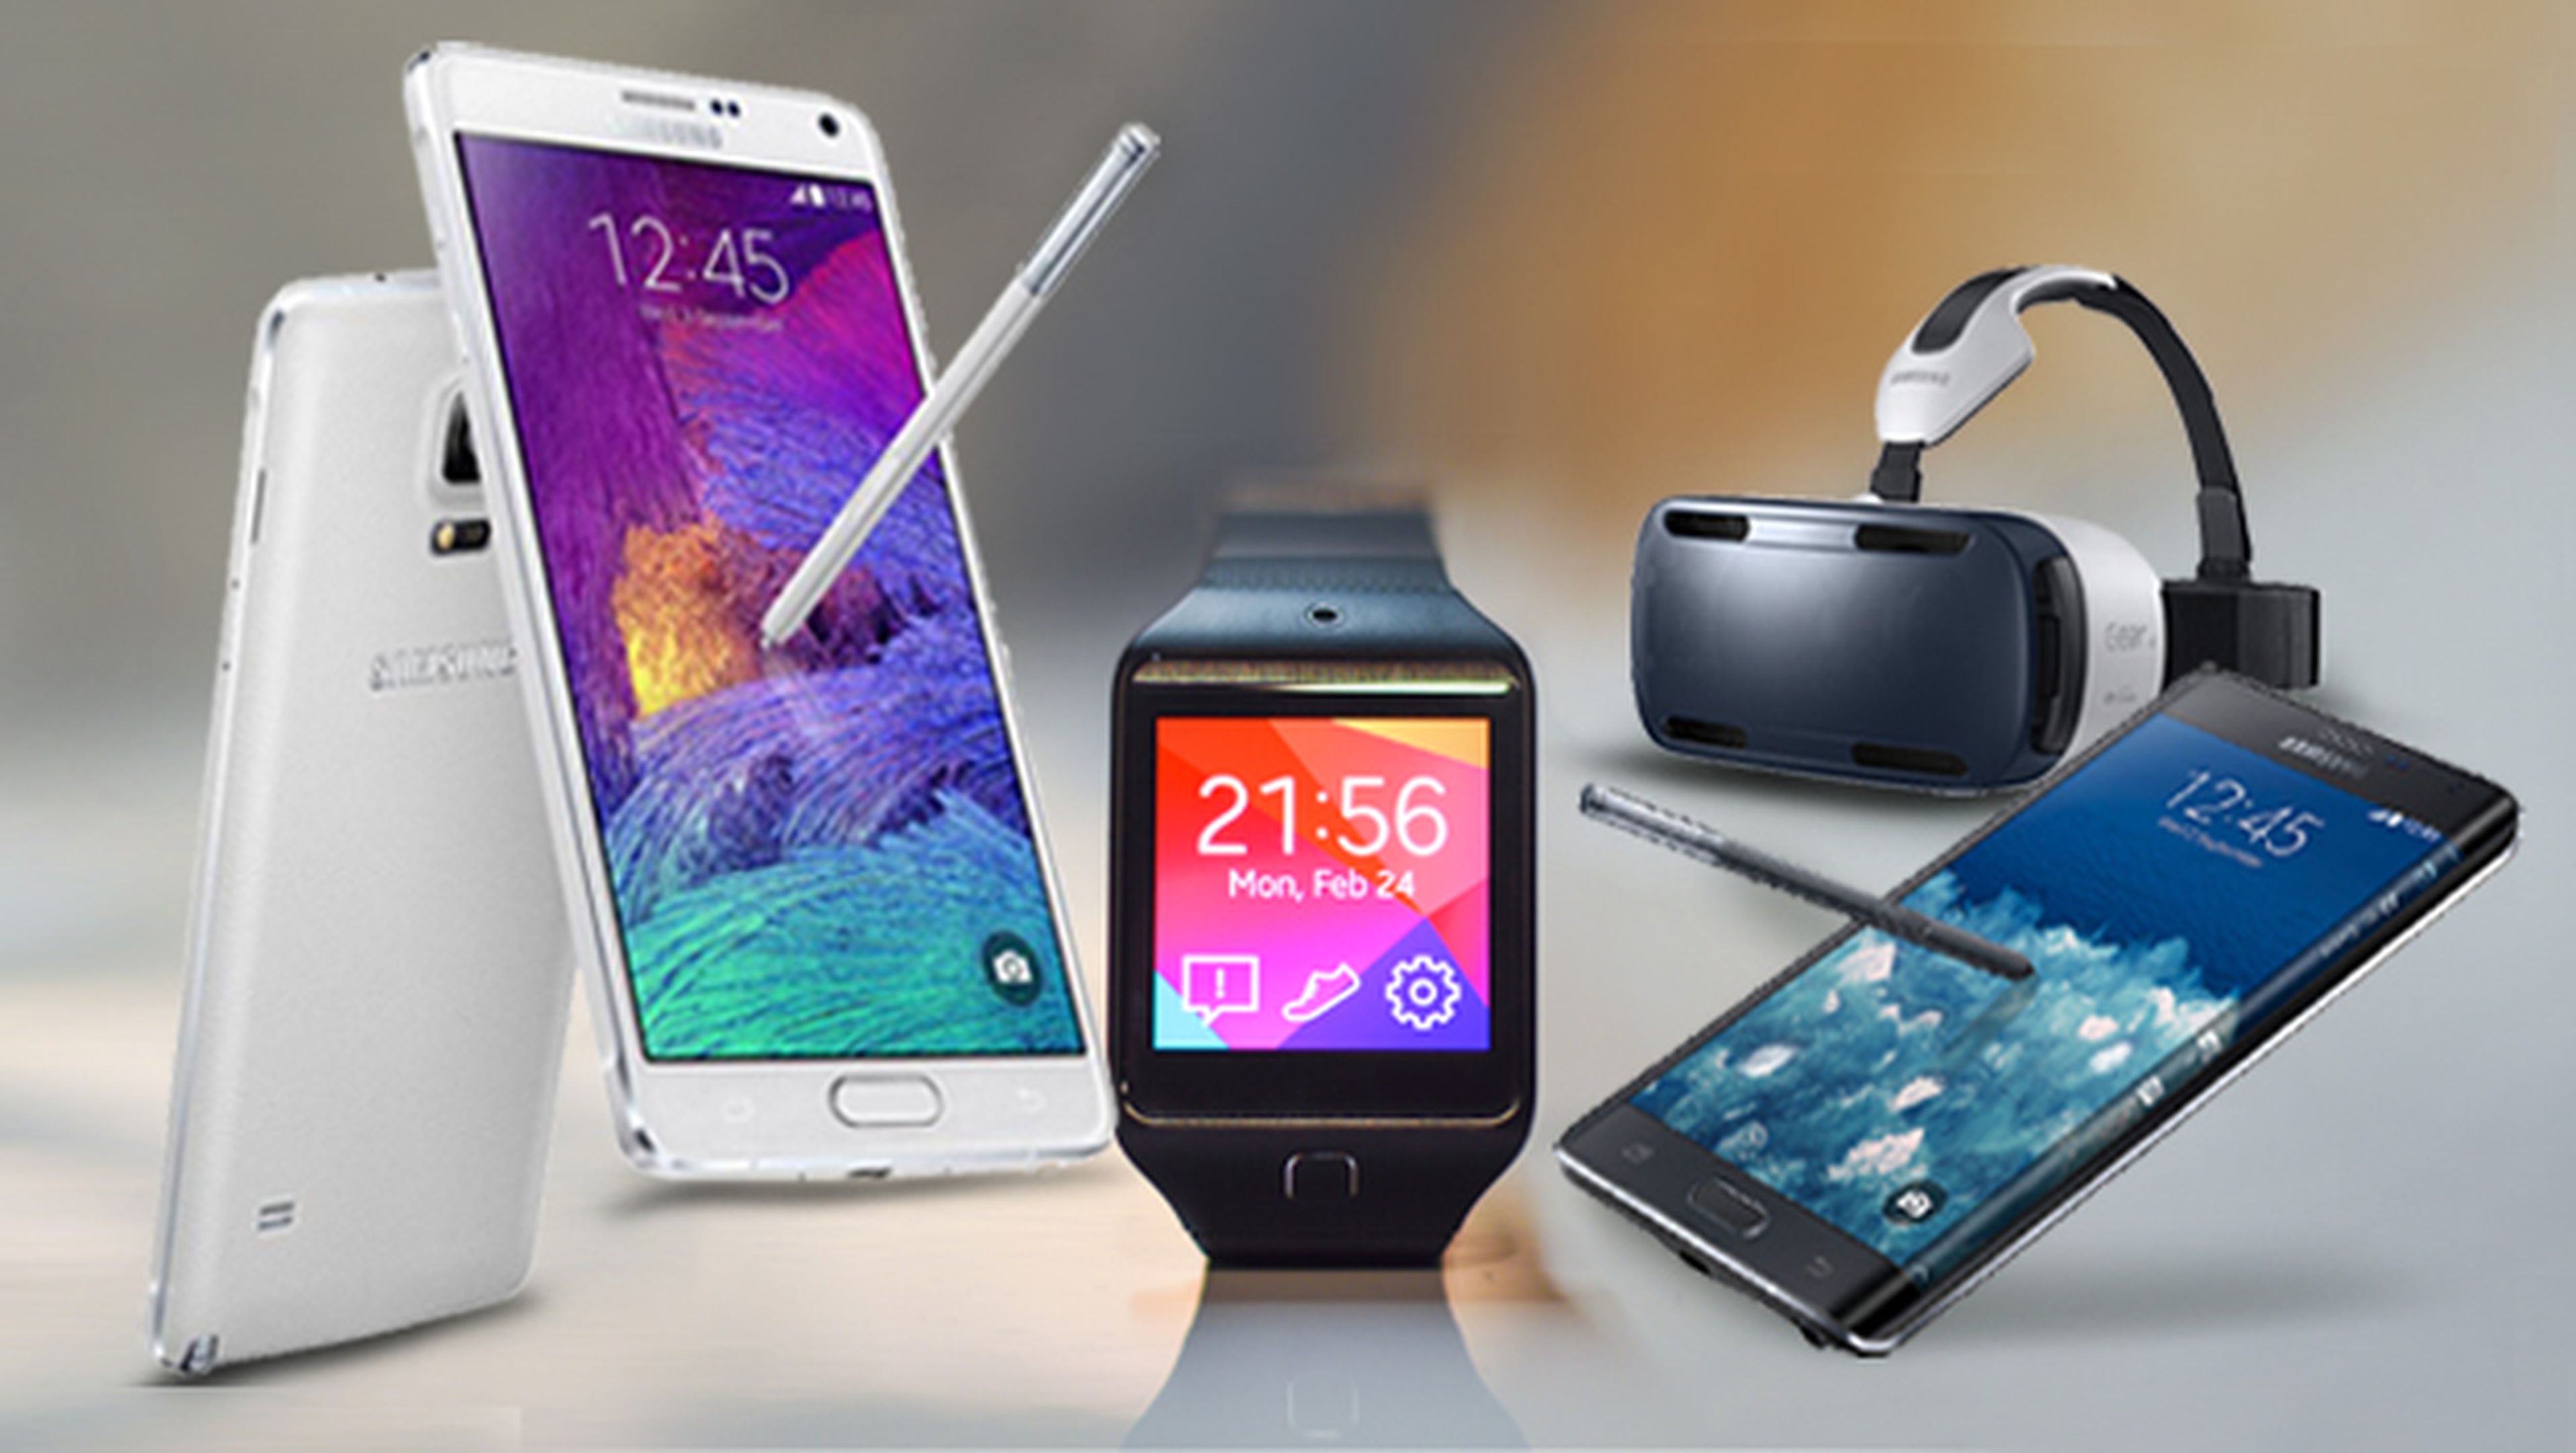 Samsung en IFA 2014: Galaxy Note 4, gafas de realidad virtual Gear VR y wearables.